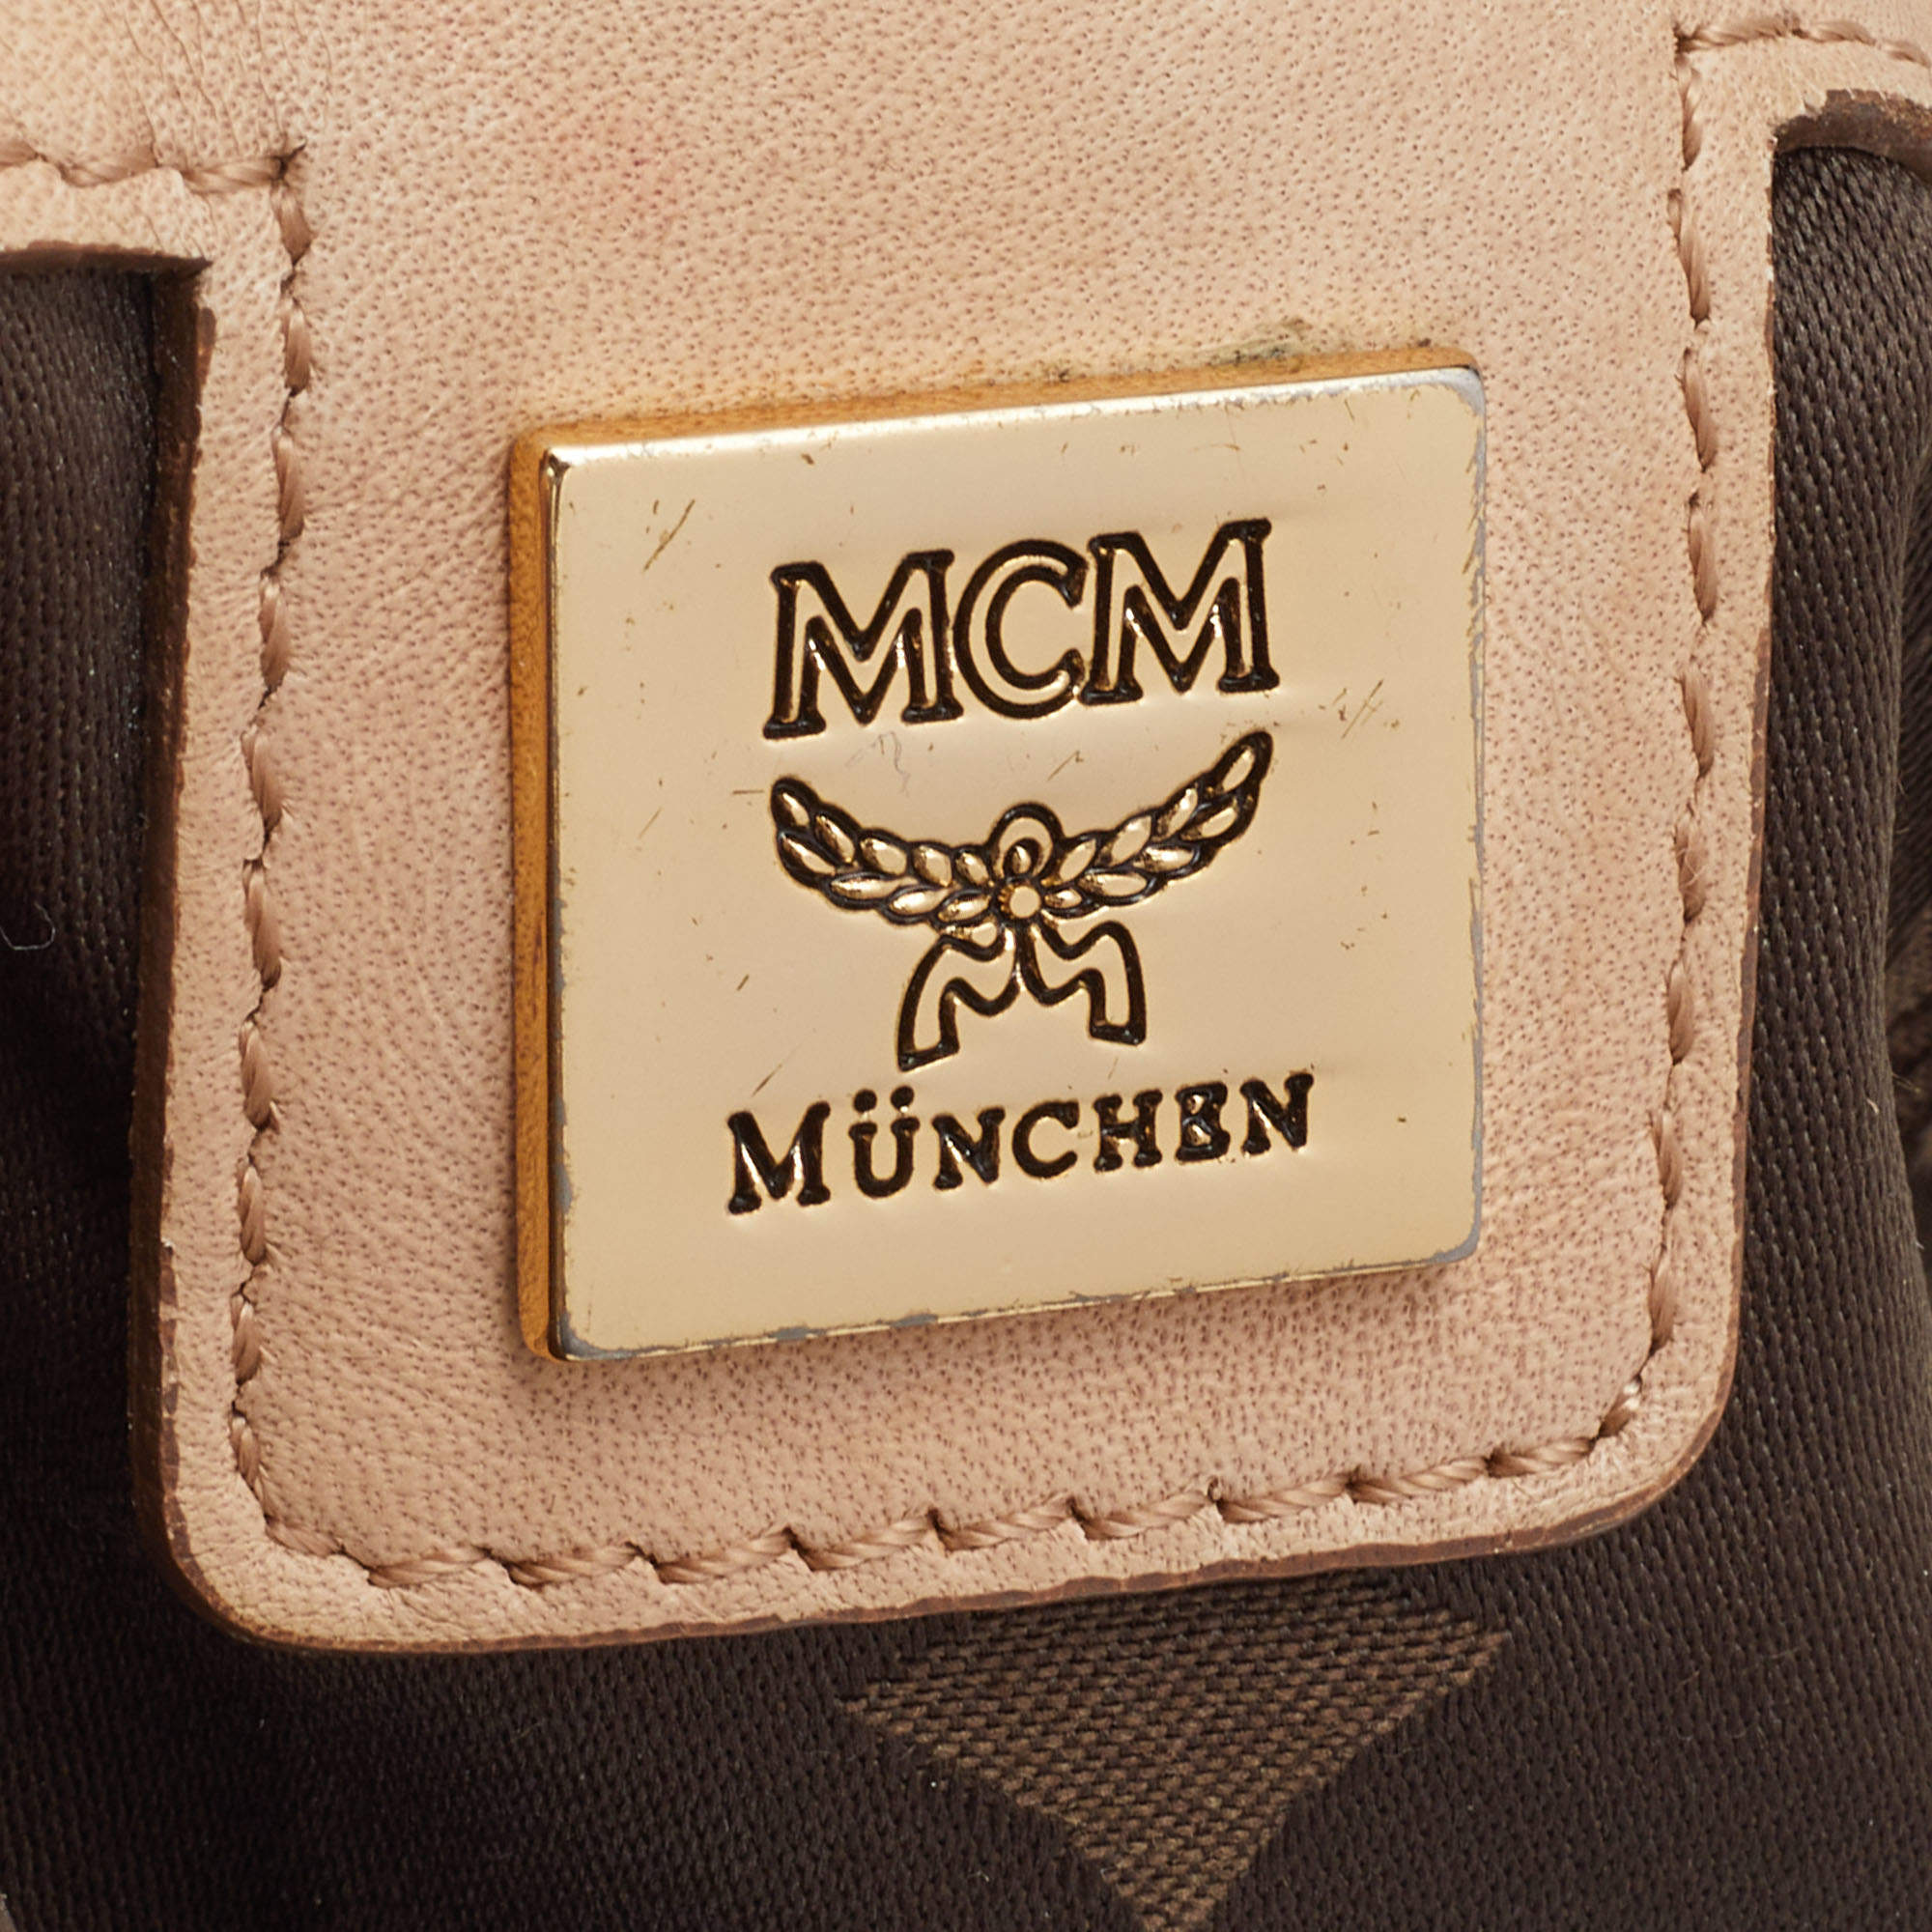 Mcm Bags Made In Korea